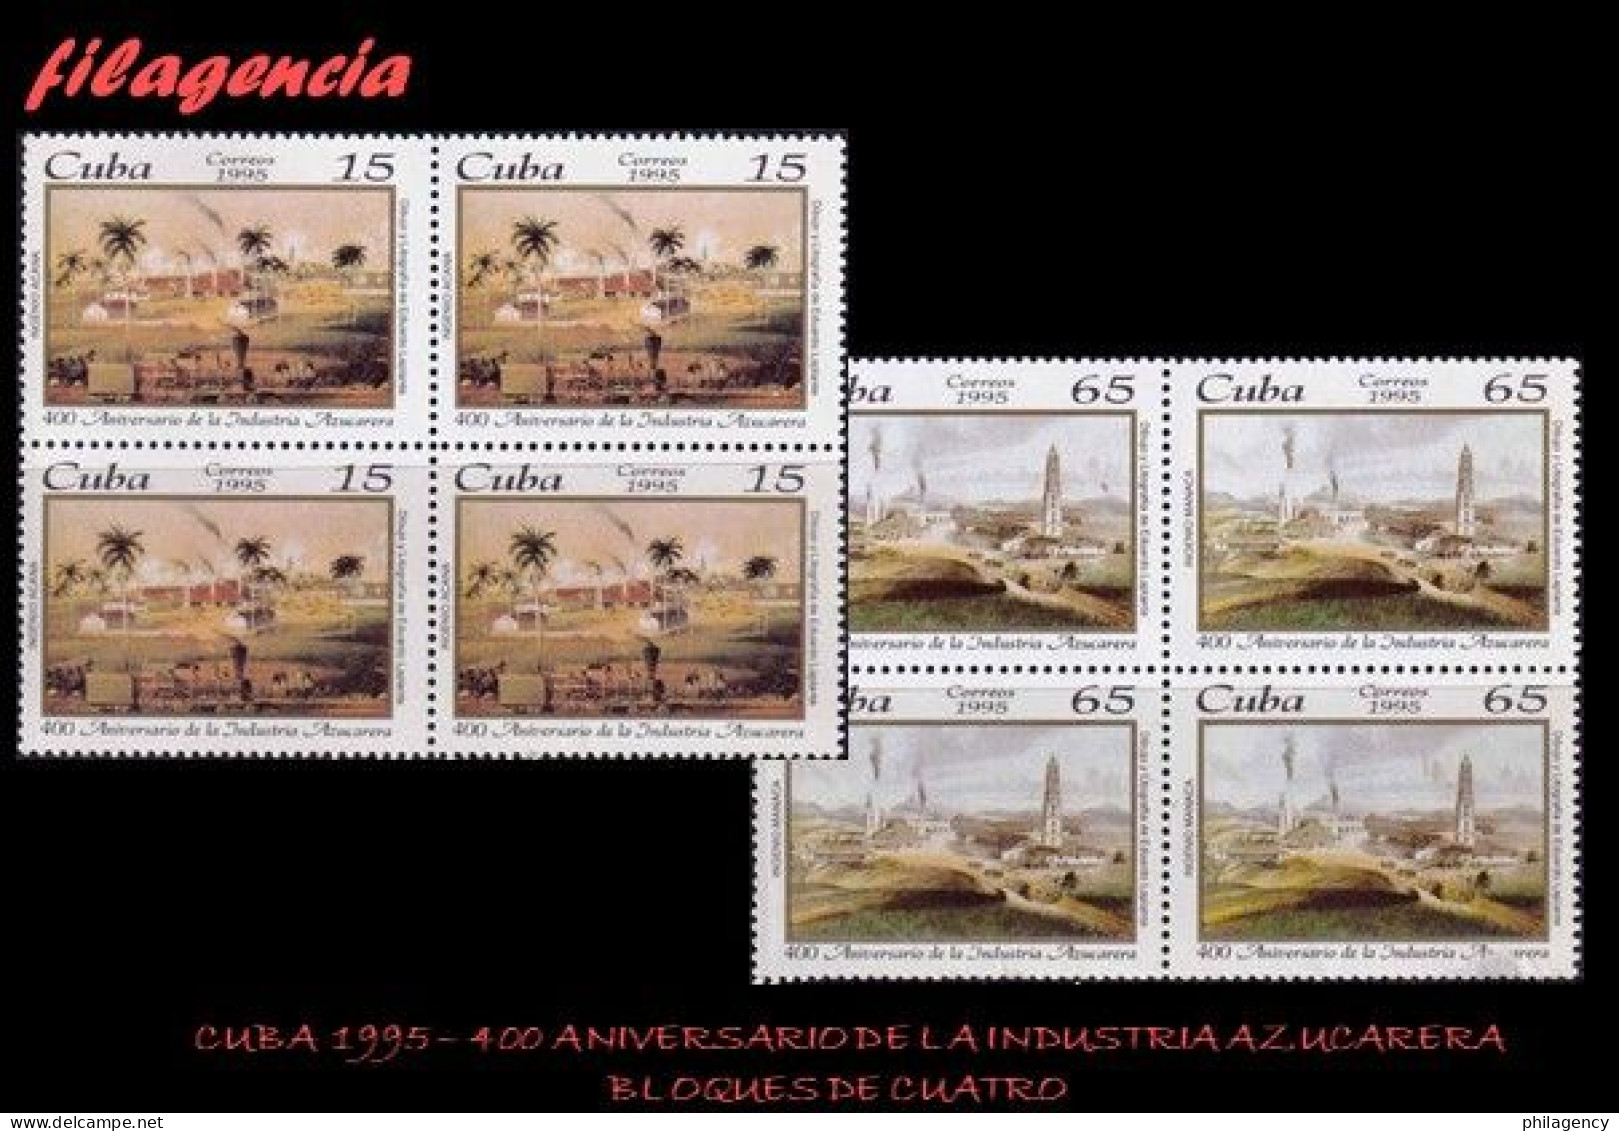 CUBA. BLOQUES DE CUATRO. 1995-15 IV CENTENARIO DE LA INDUSTRIA AZUCARERA EN CUBA - Unused Stamps